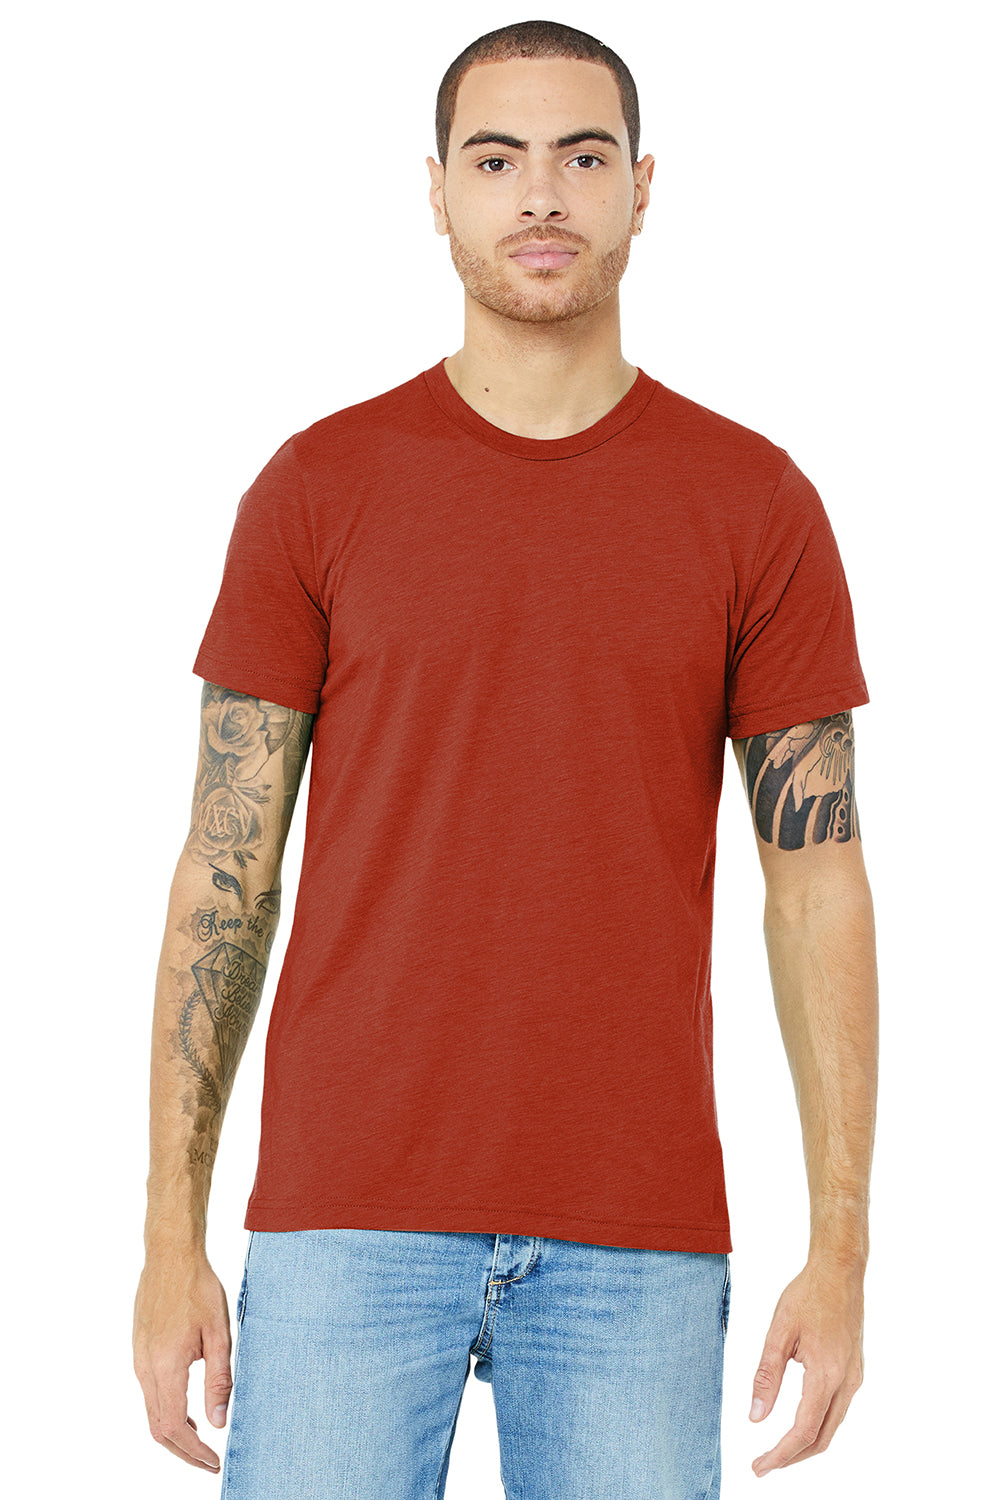 Bella + Canvas BC3413/3413C/3413 Mens Short Sleeve Crewneck T-Shirt Brick Red Model Front